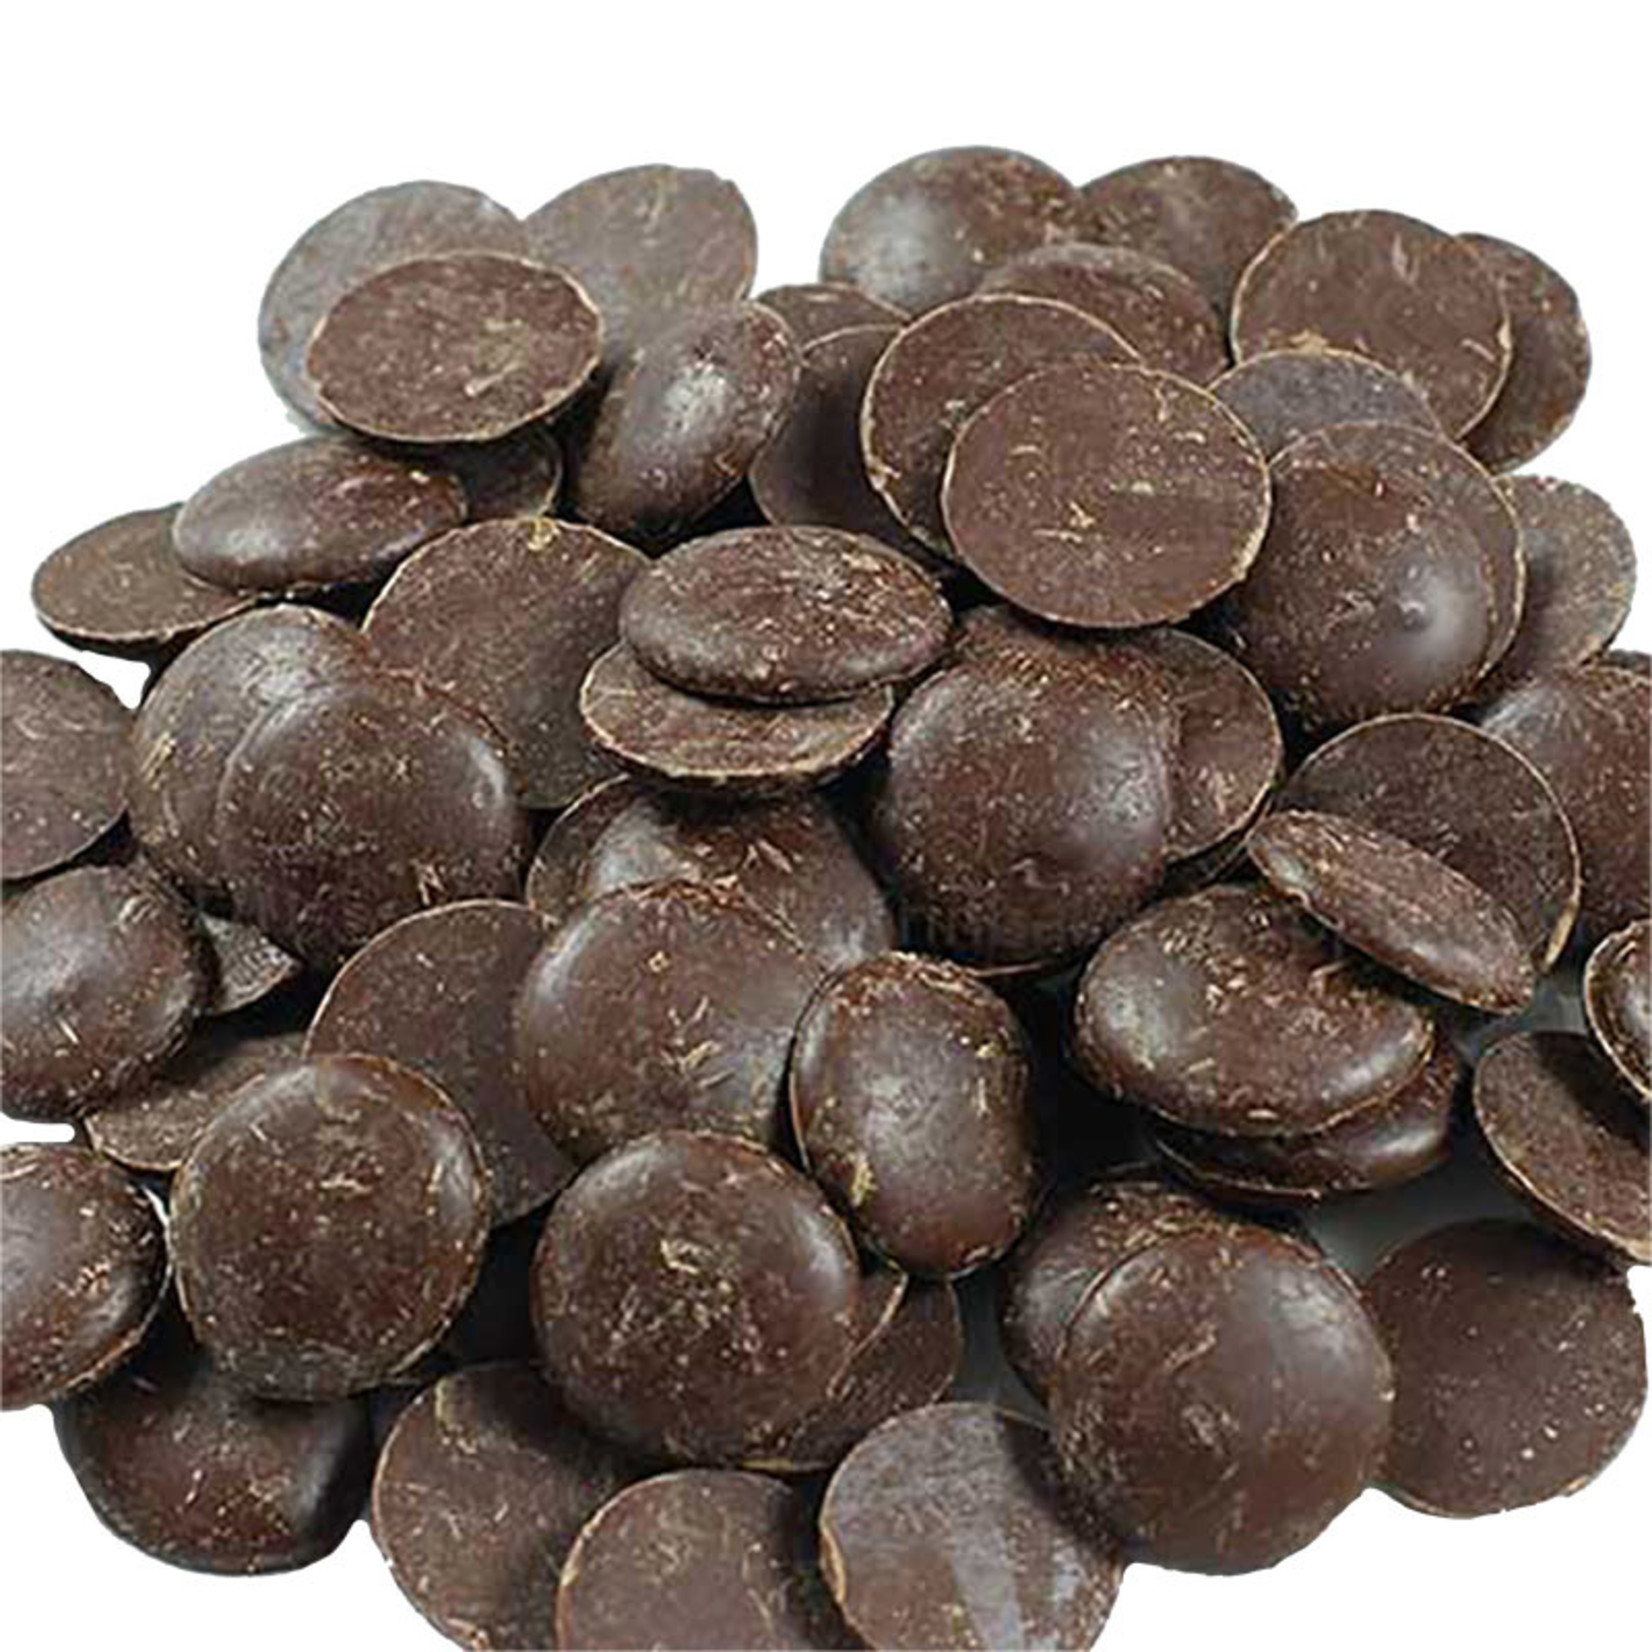 Cacao Barry Cacao Barry - Fleur de Cao Origin Dark Chocolate 70% - 1 lb